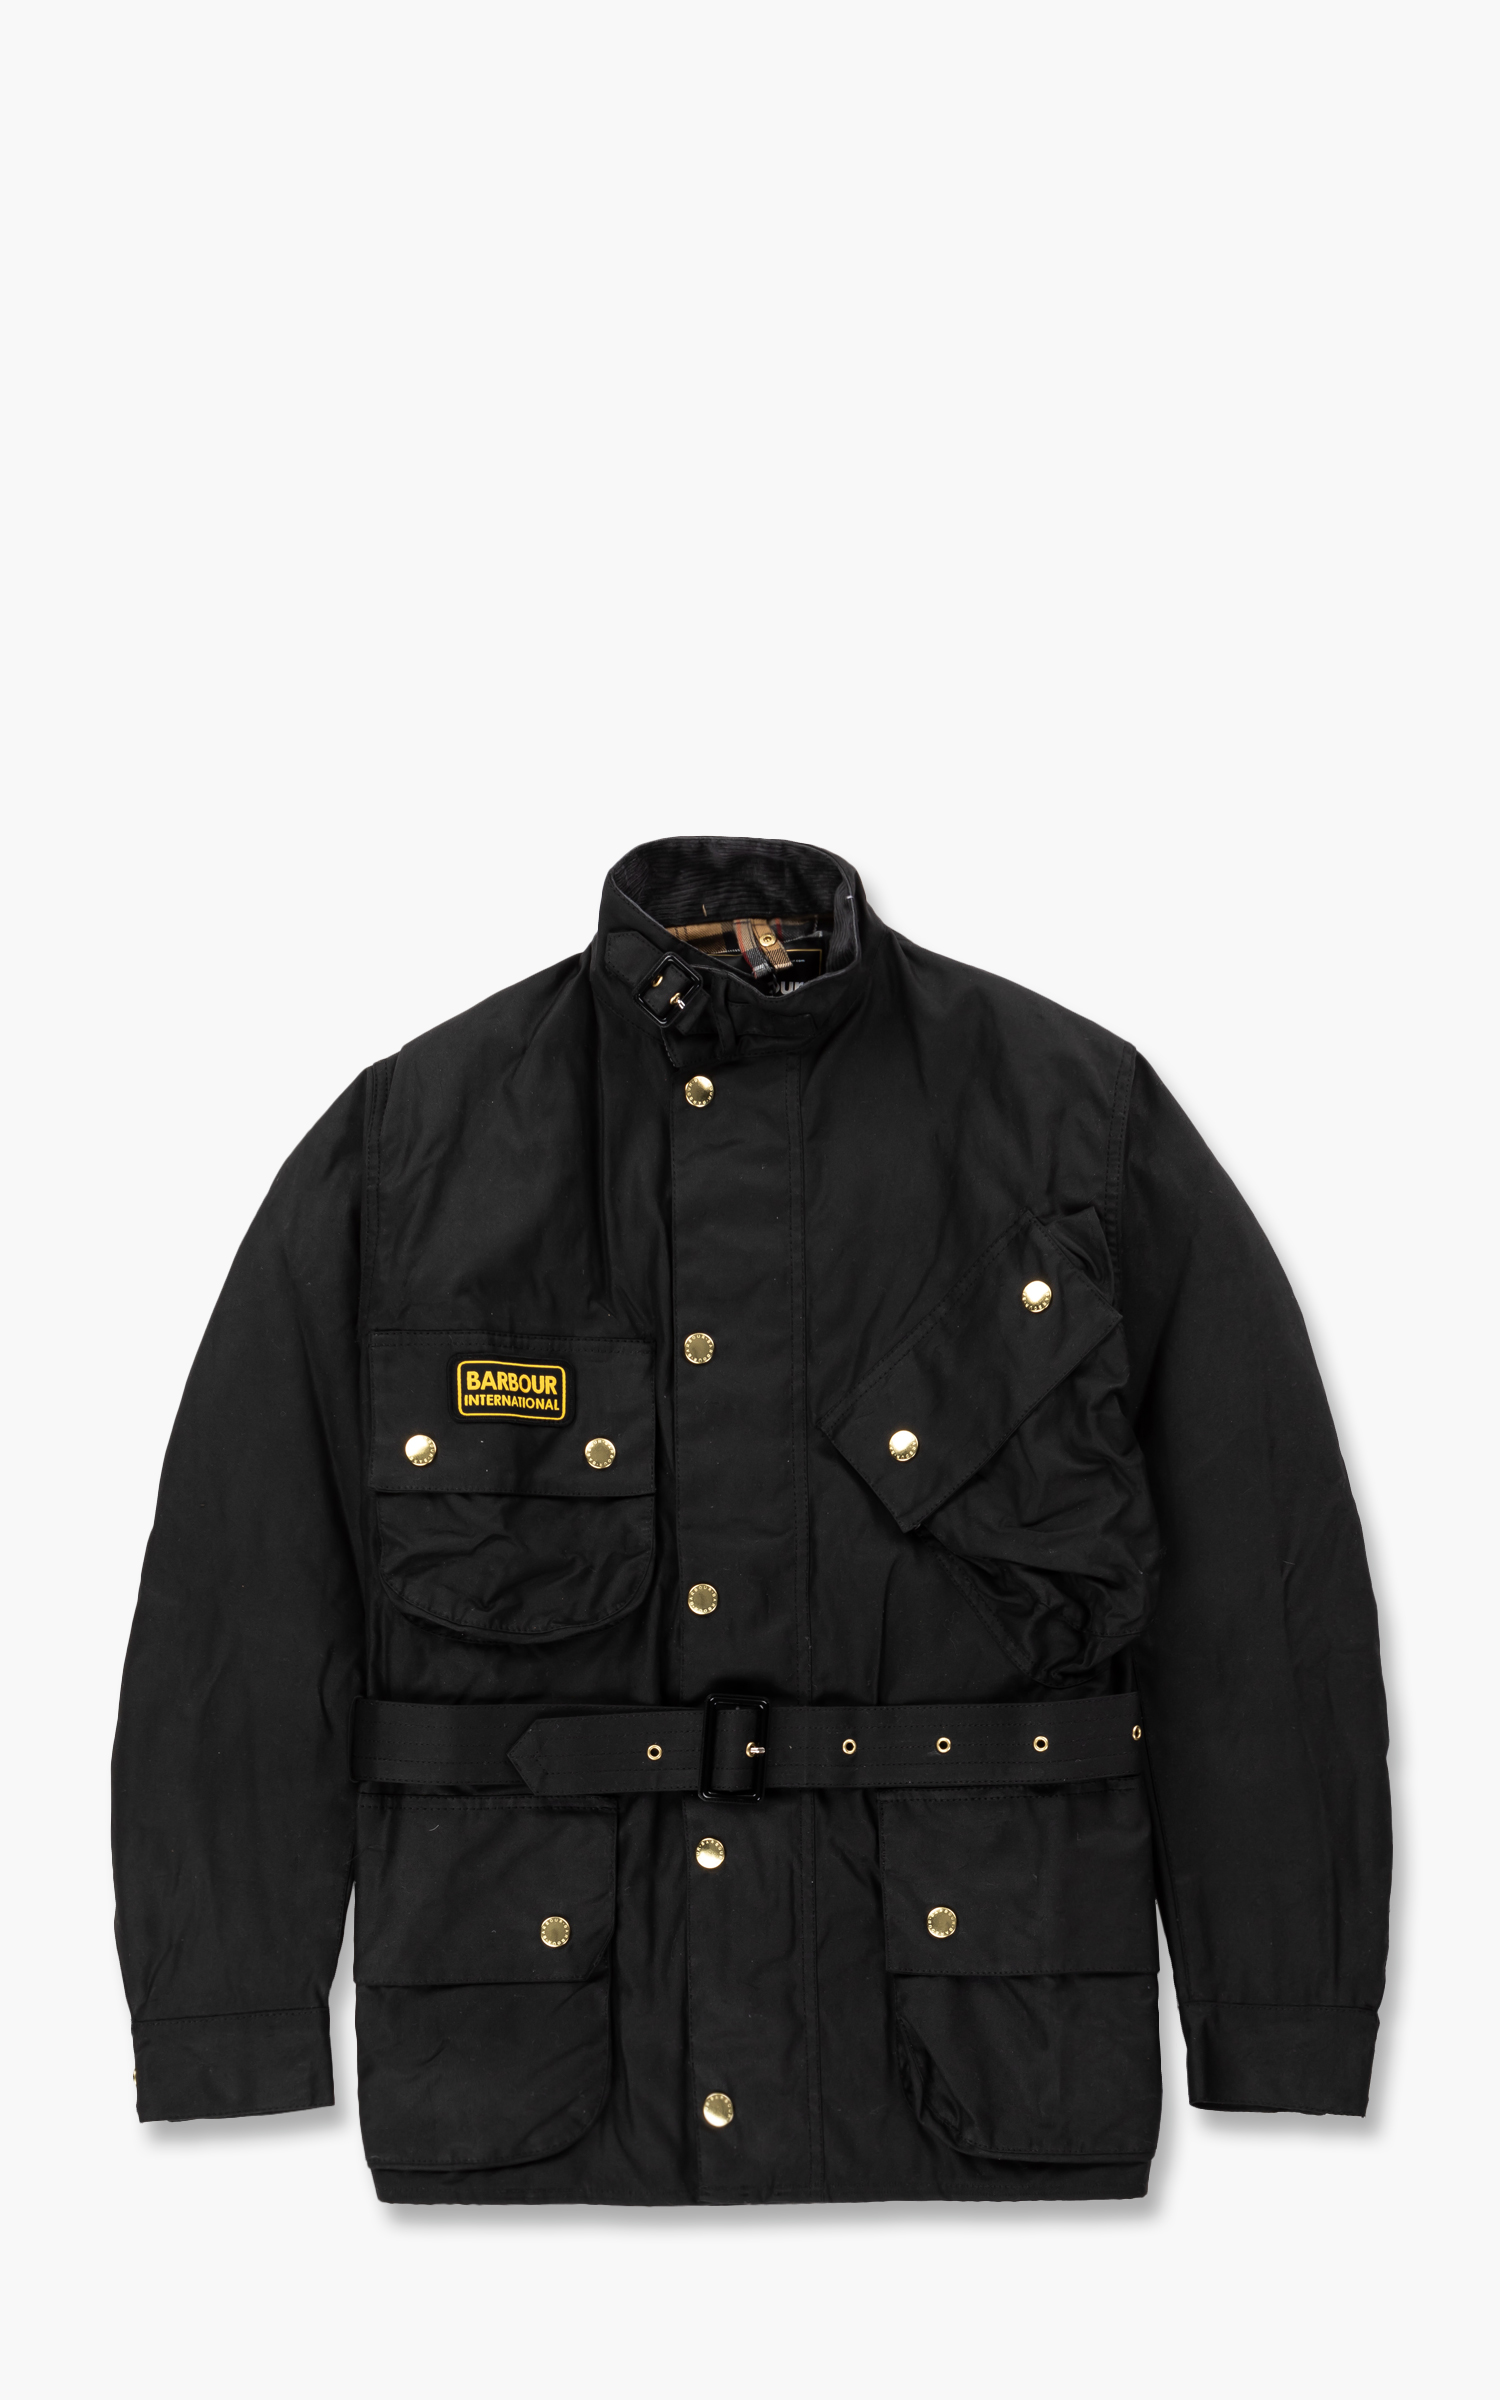 International Barbour jacket Black-